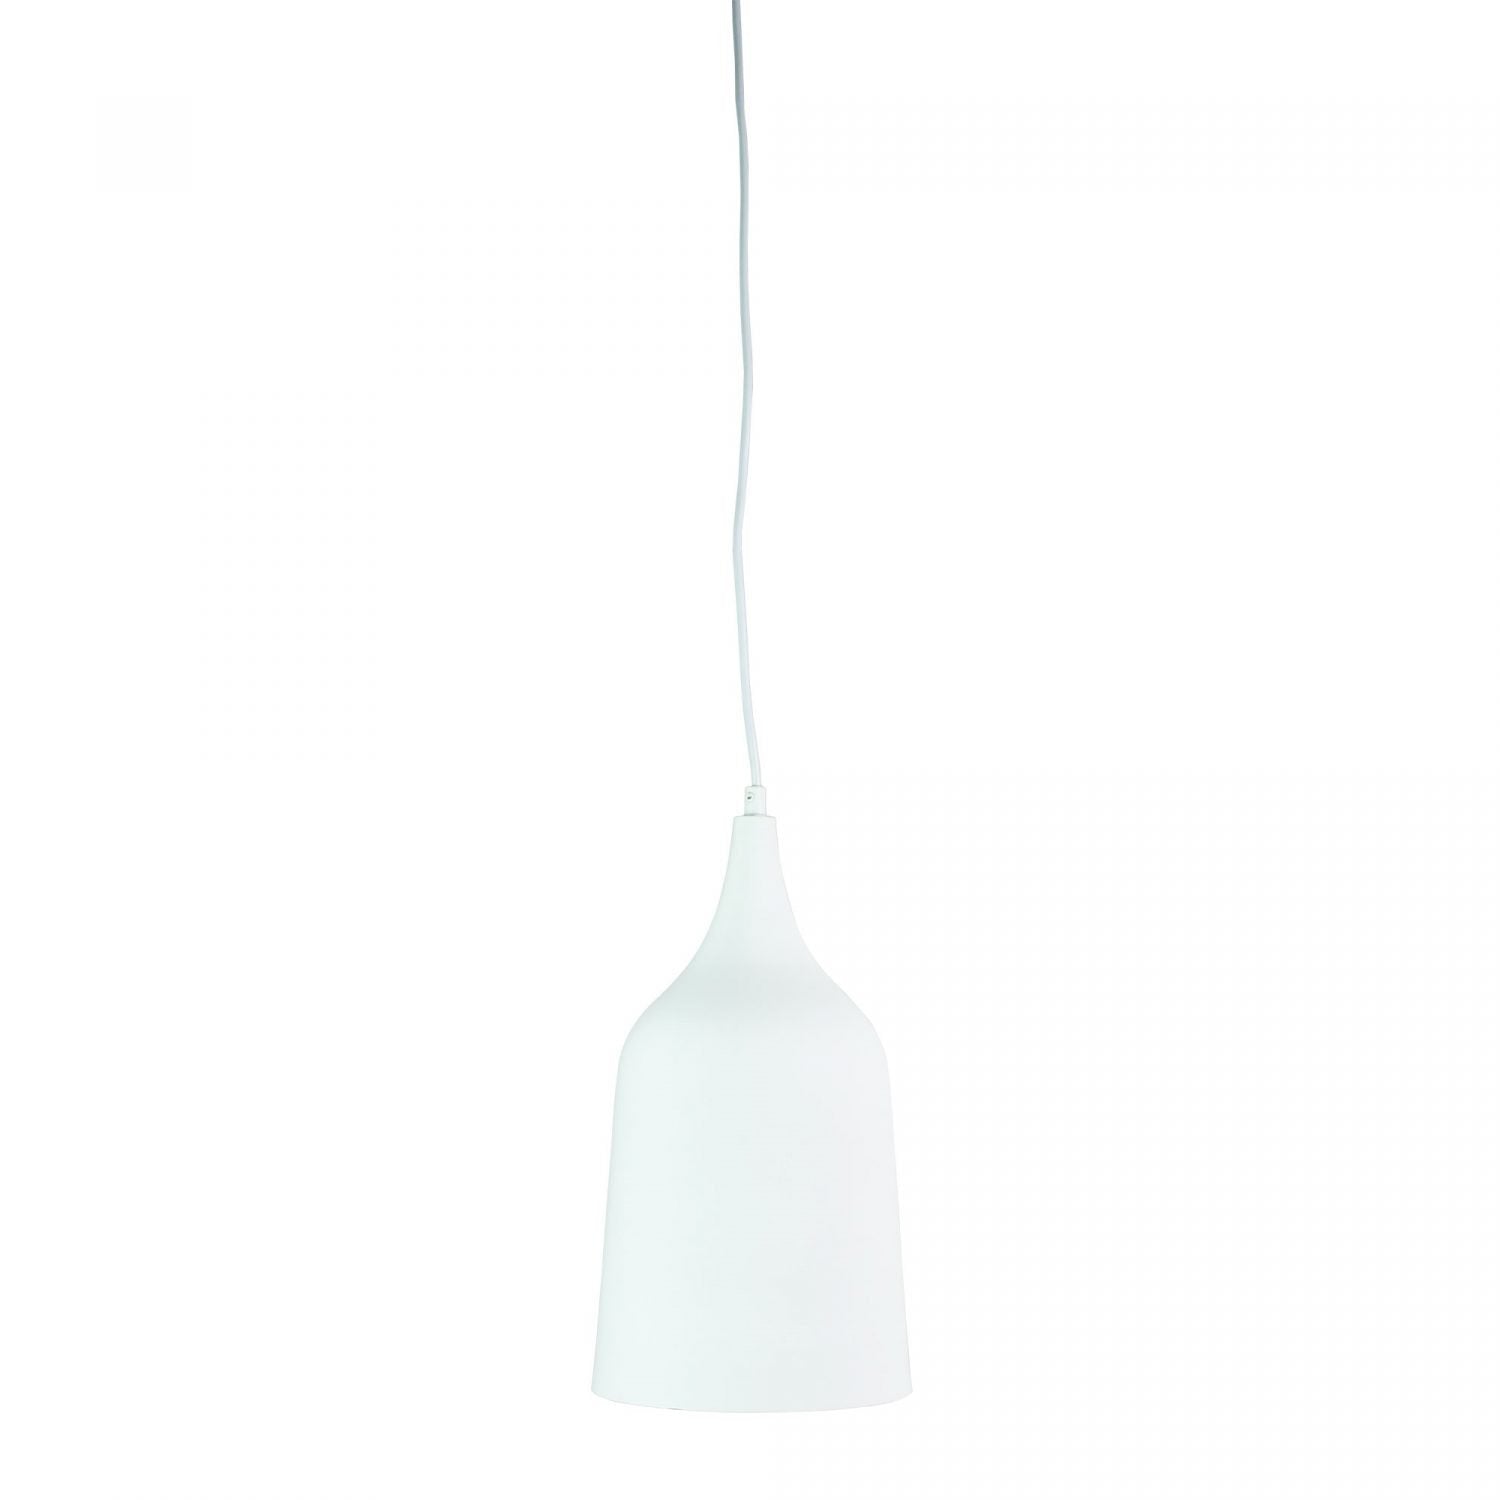 Buy Pendant lights australia - Plato 1 Light Pendant White with Gold Inner 200mm - OL67421WH